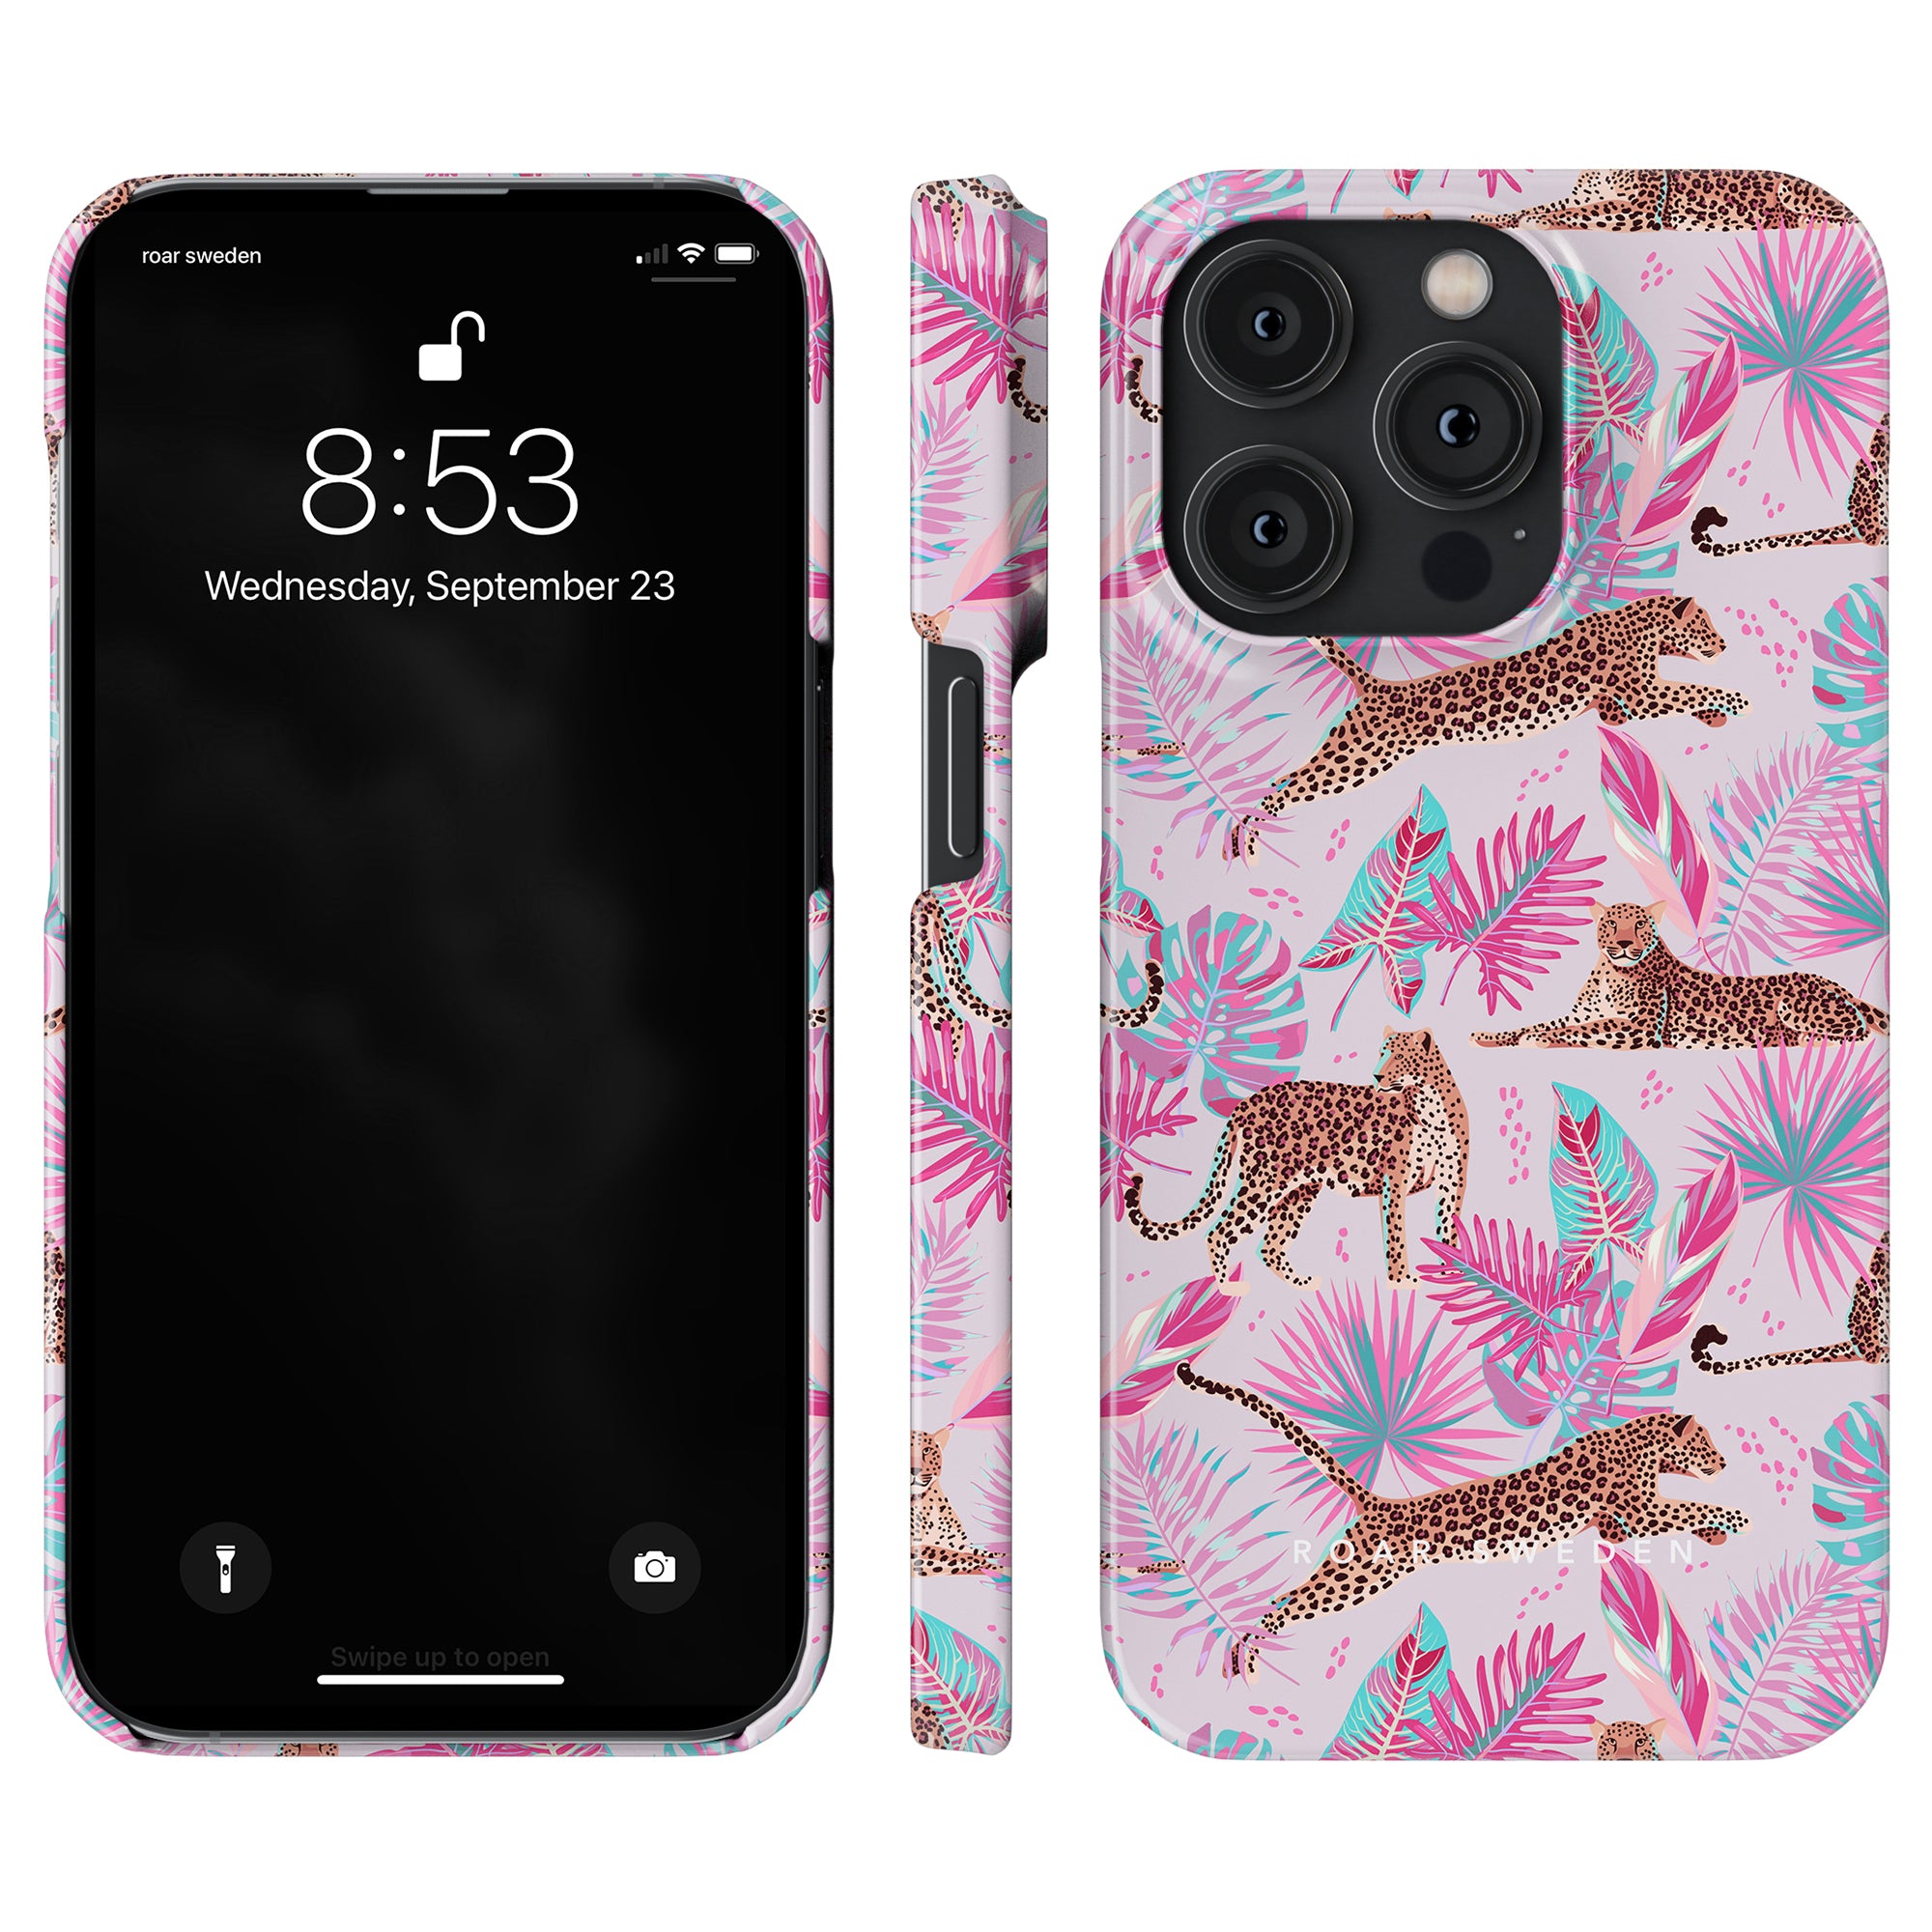 Beskrivning: Ett rosa Chill - Slim case mobilskal med cheetahs och palmträd på det.